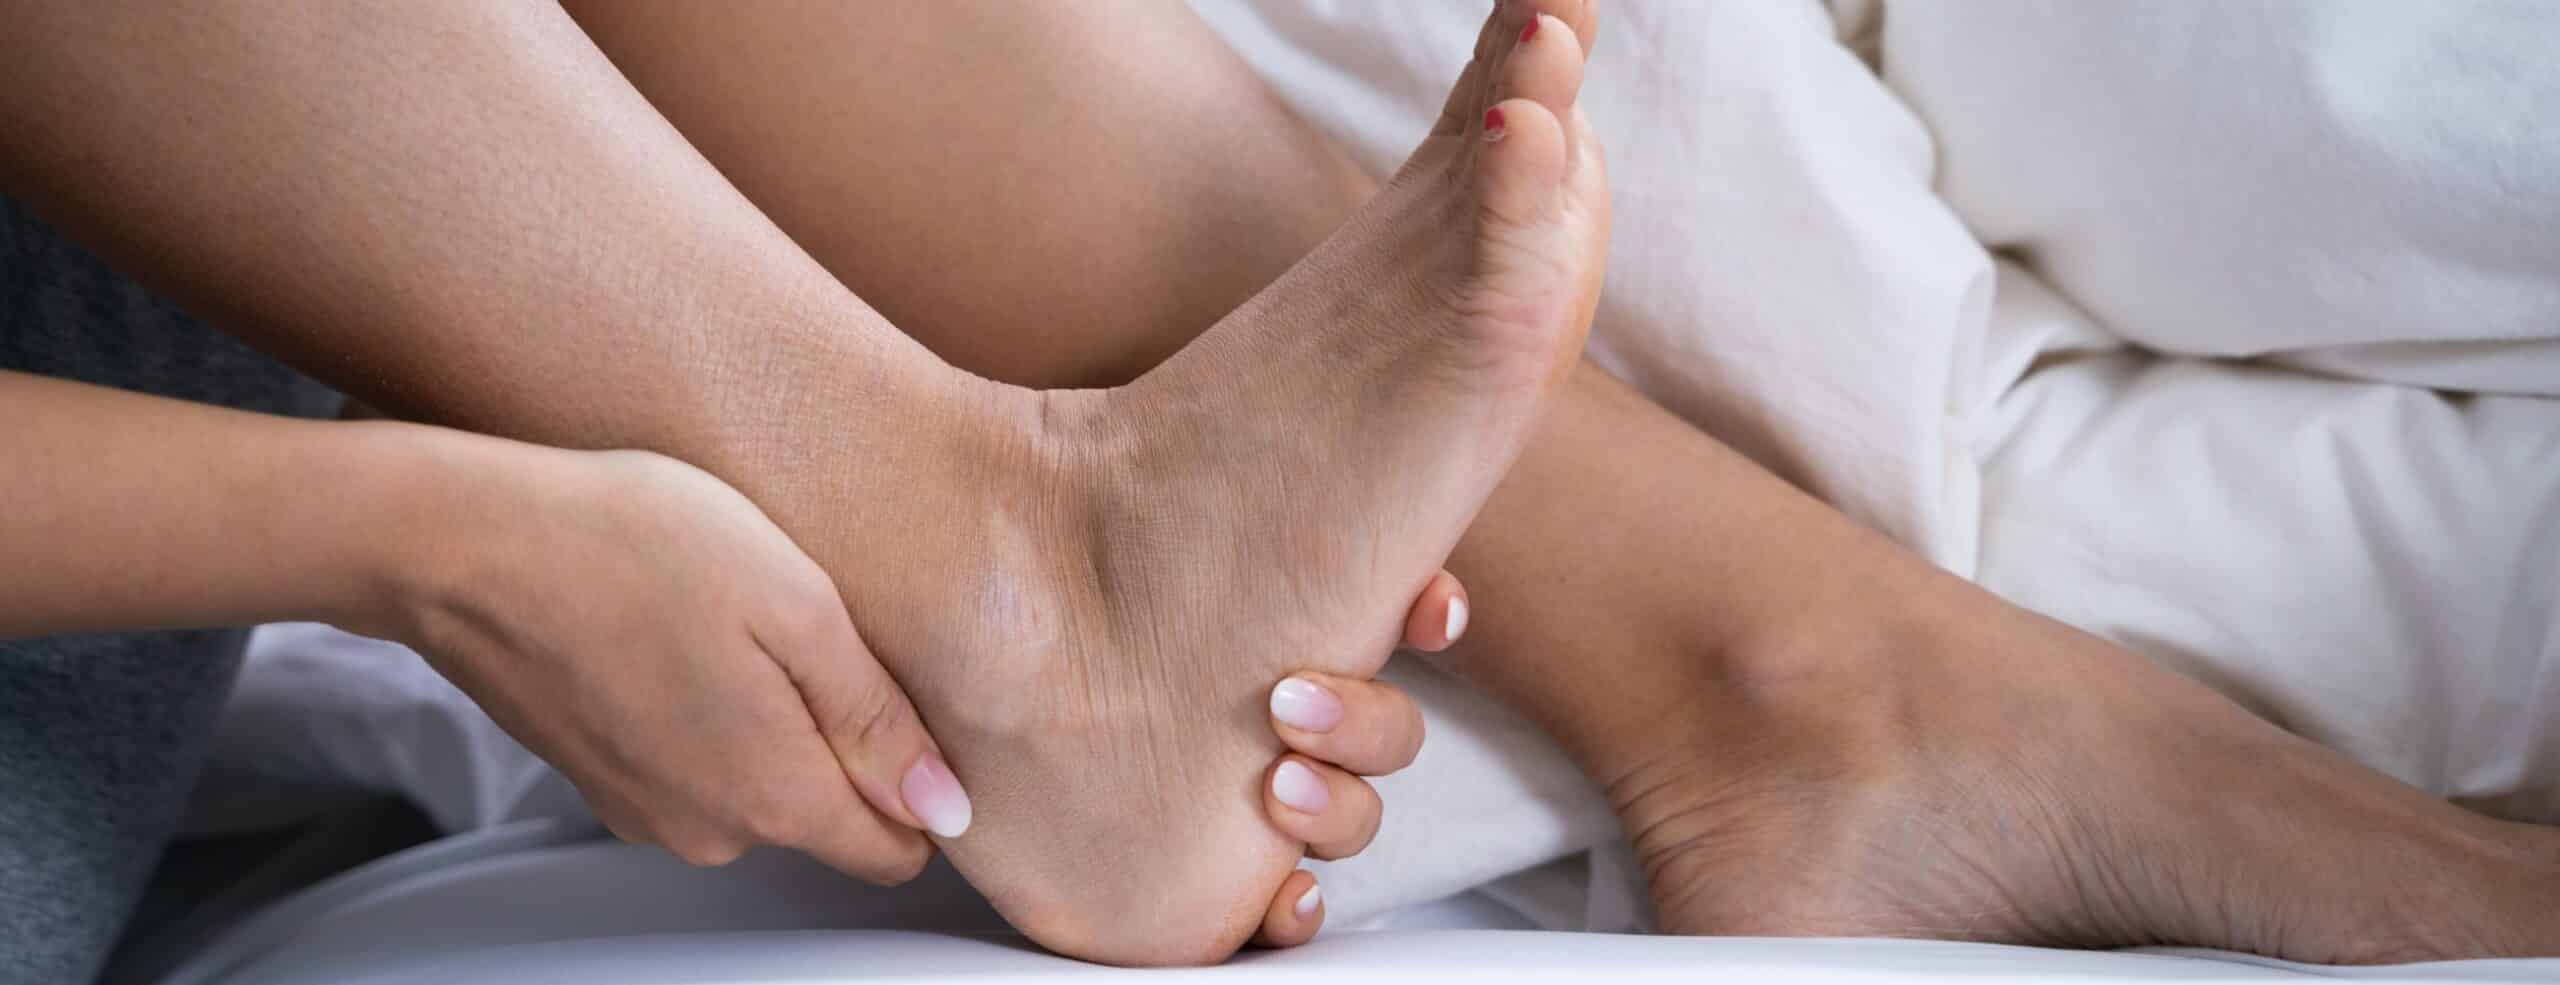 Douleur au pied, qui consulter ? | chirurgie orthopédique pied | Dr Polle | Bois-Guillaume